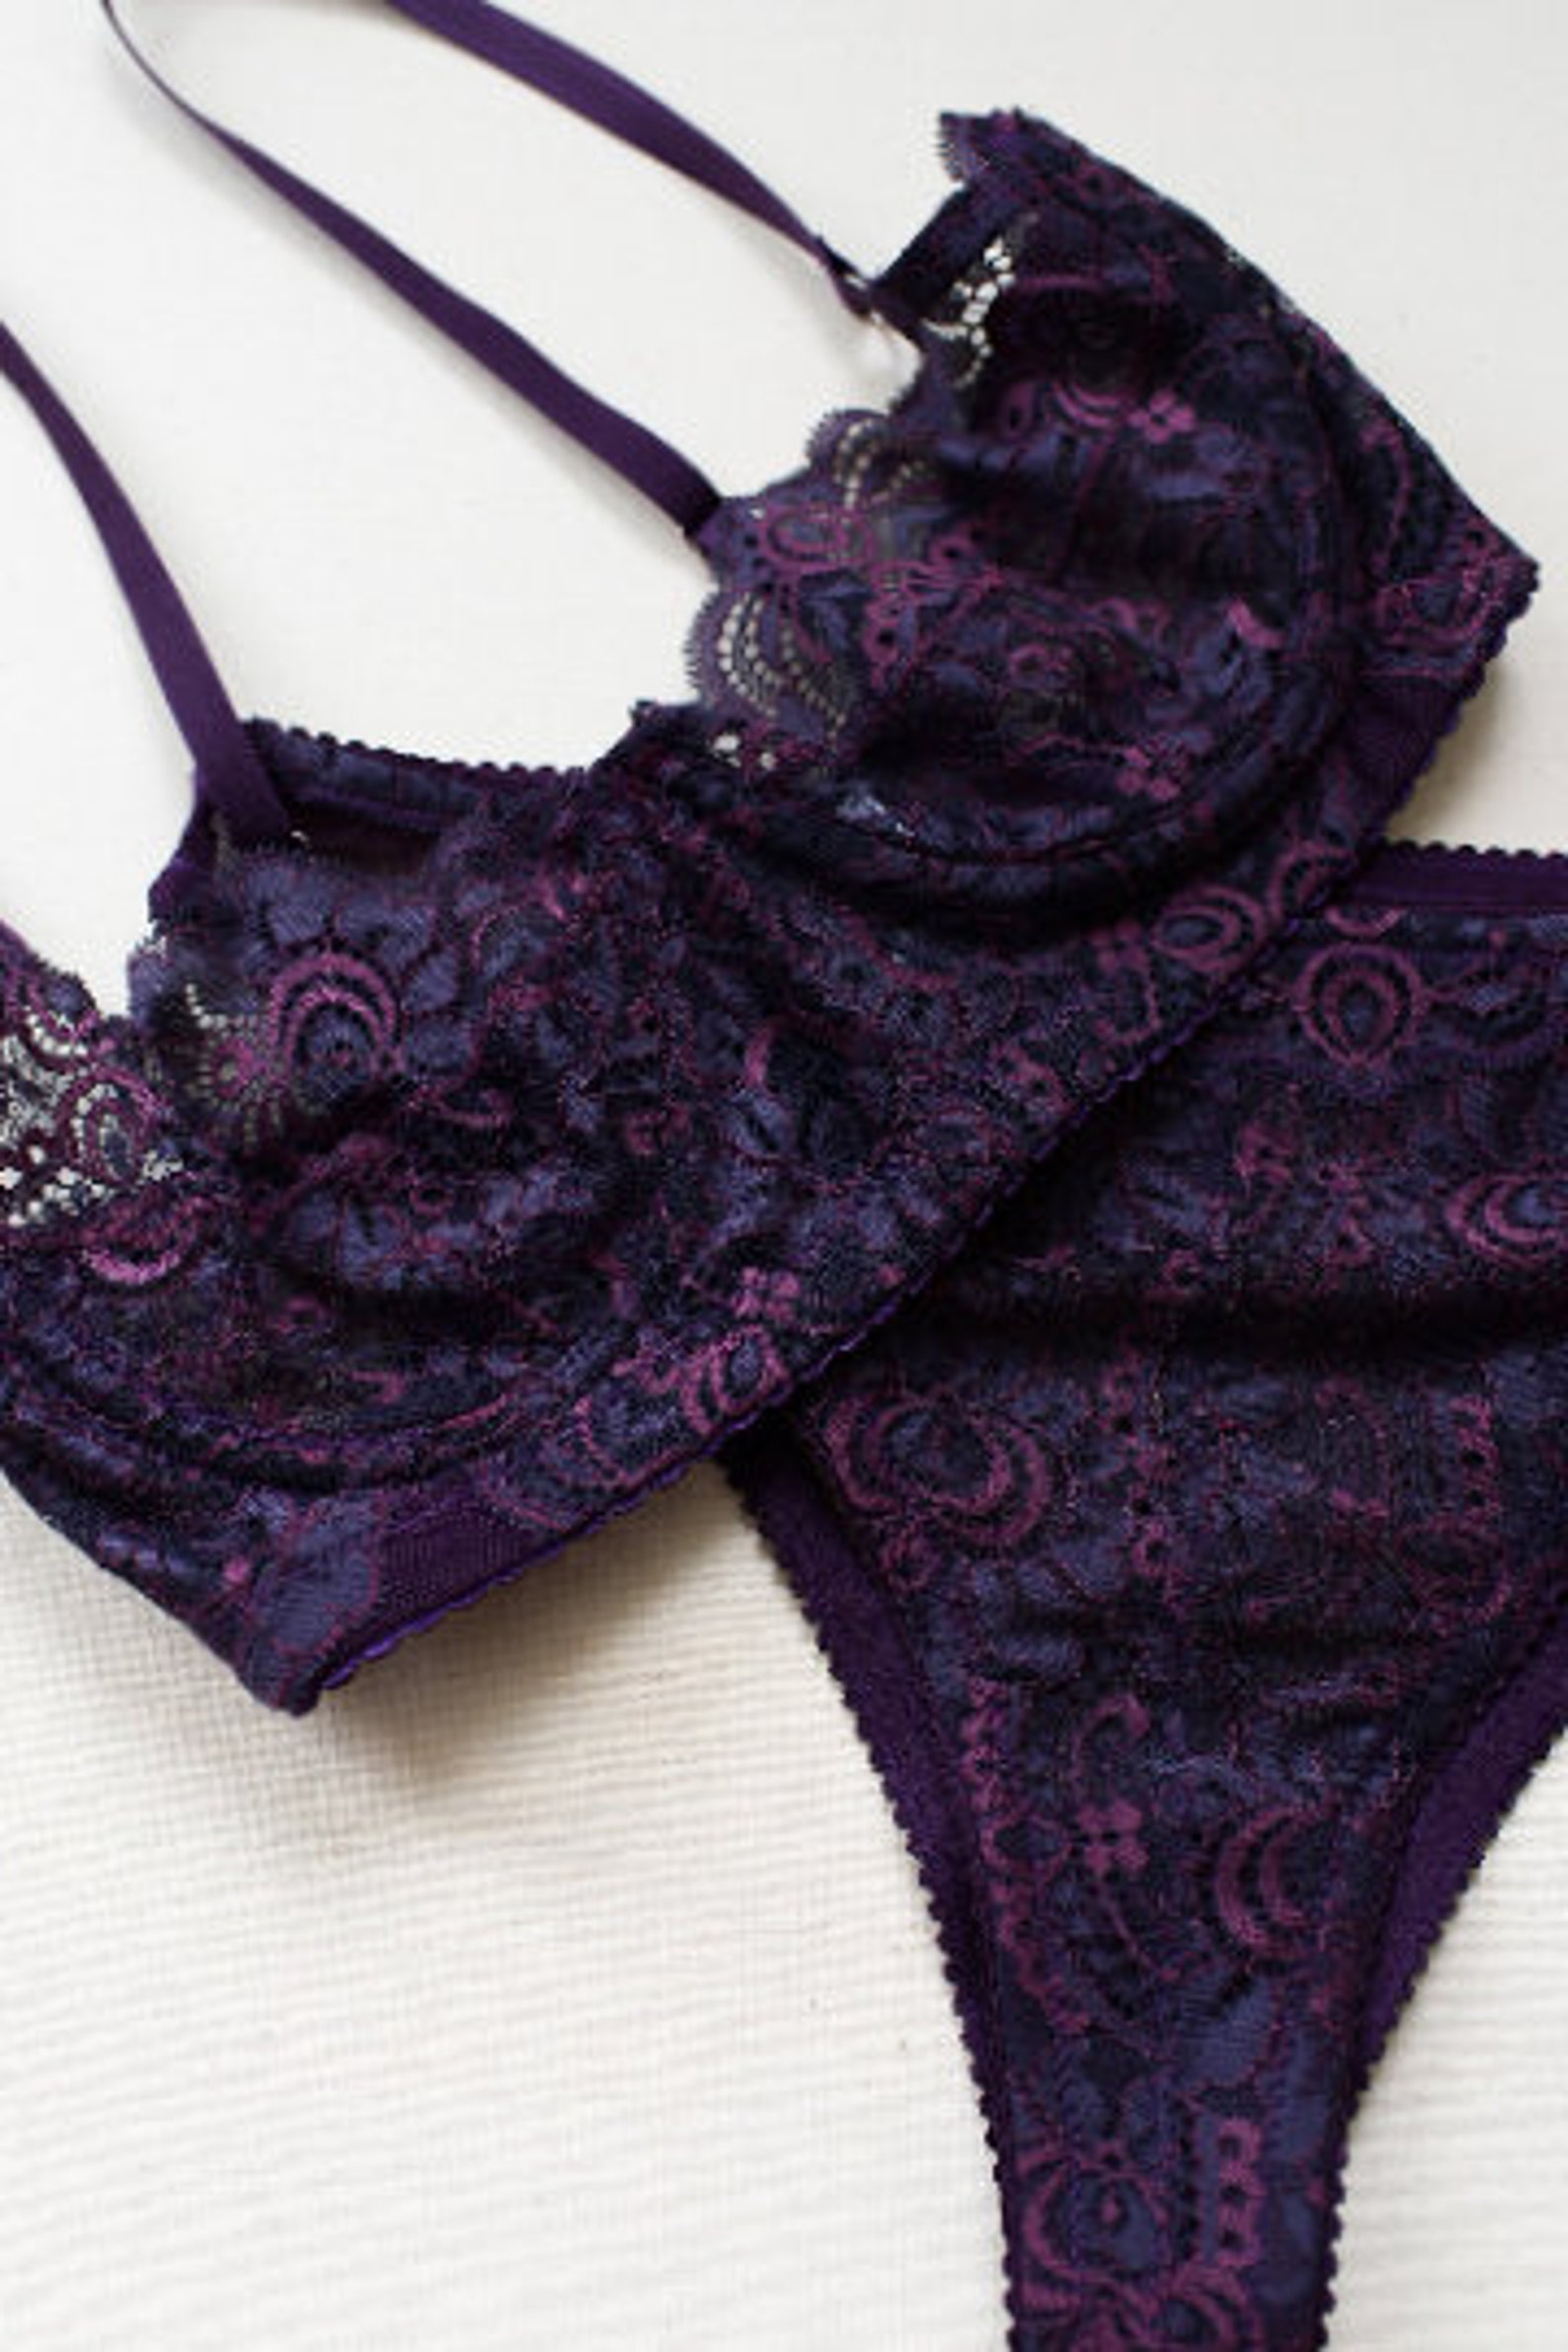 Lilac lingerie Lace lingerie setPurple lingerie lace | Etsy